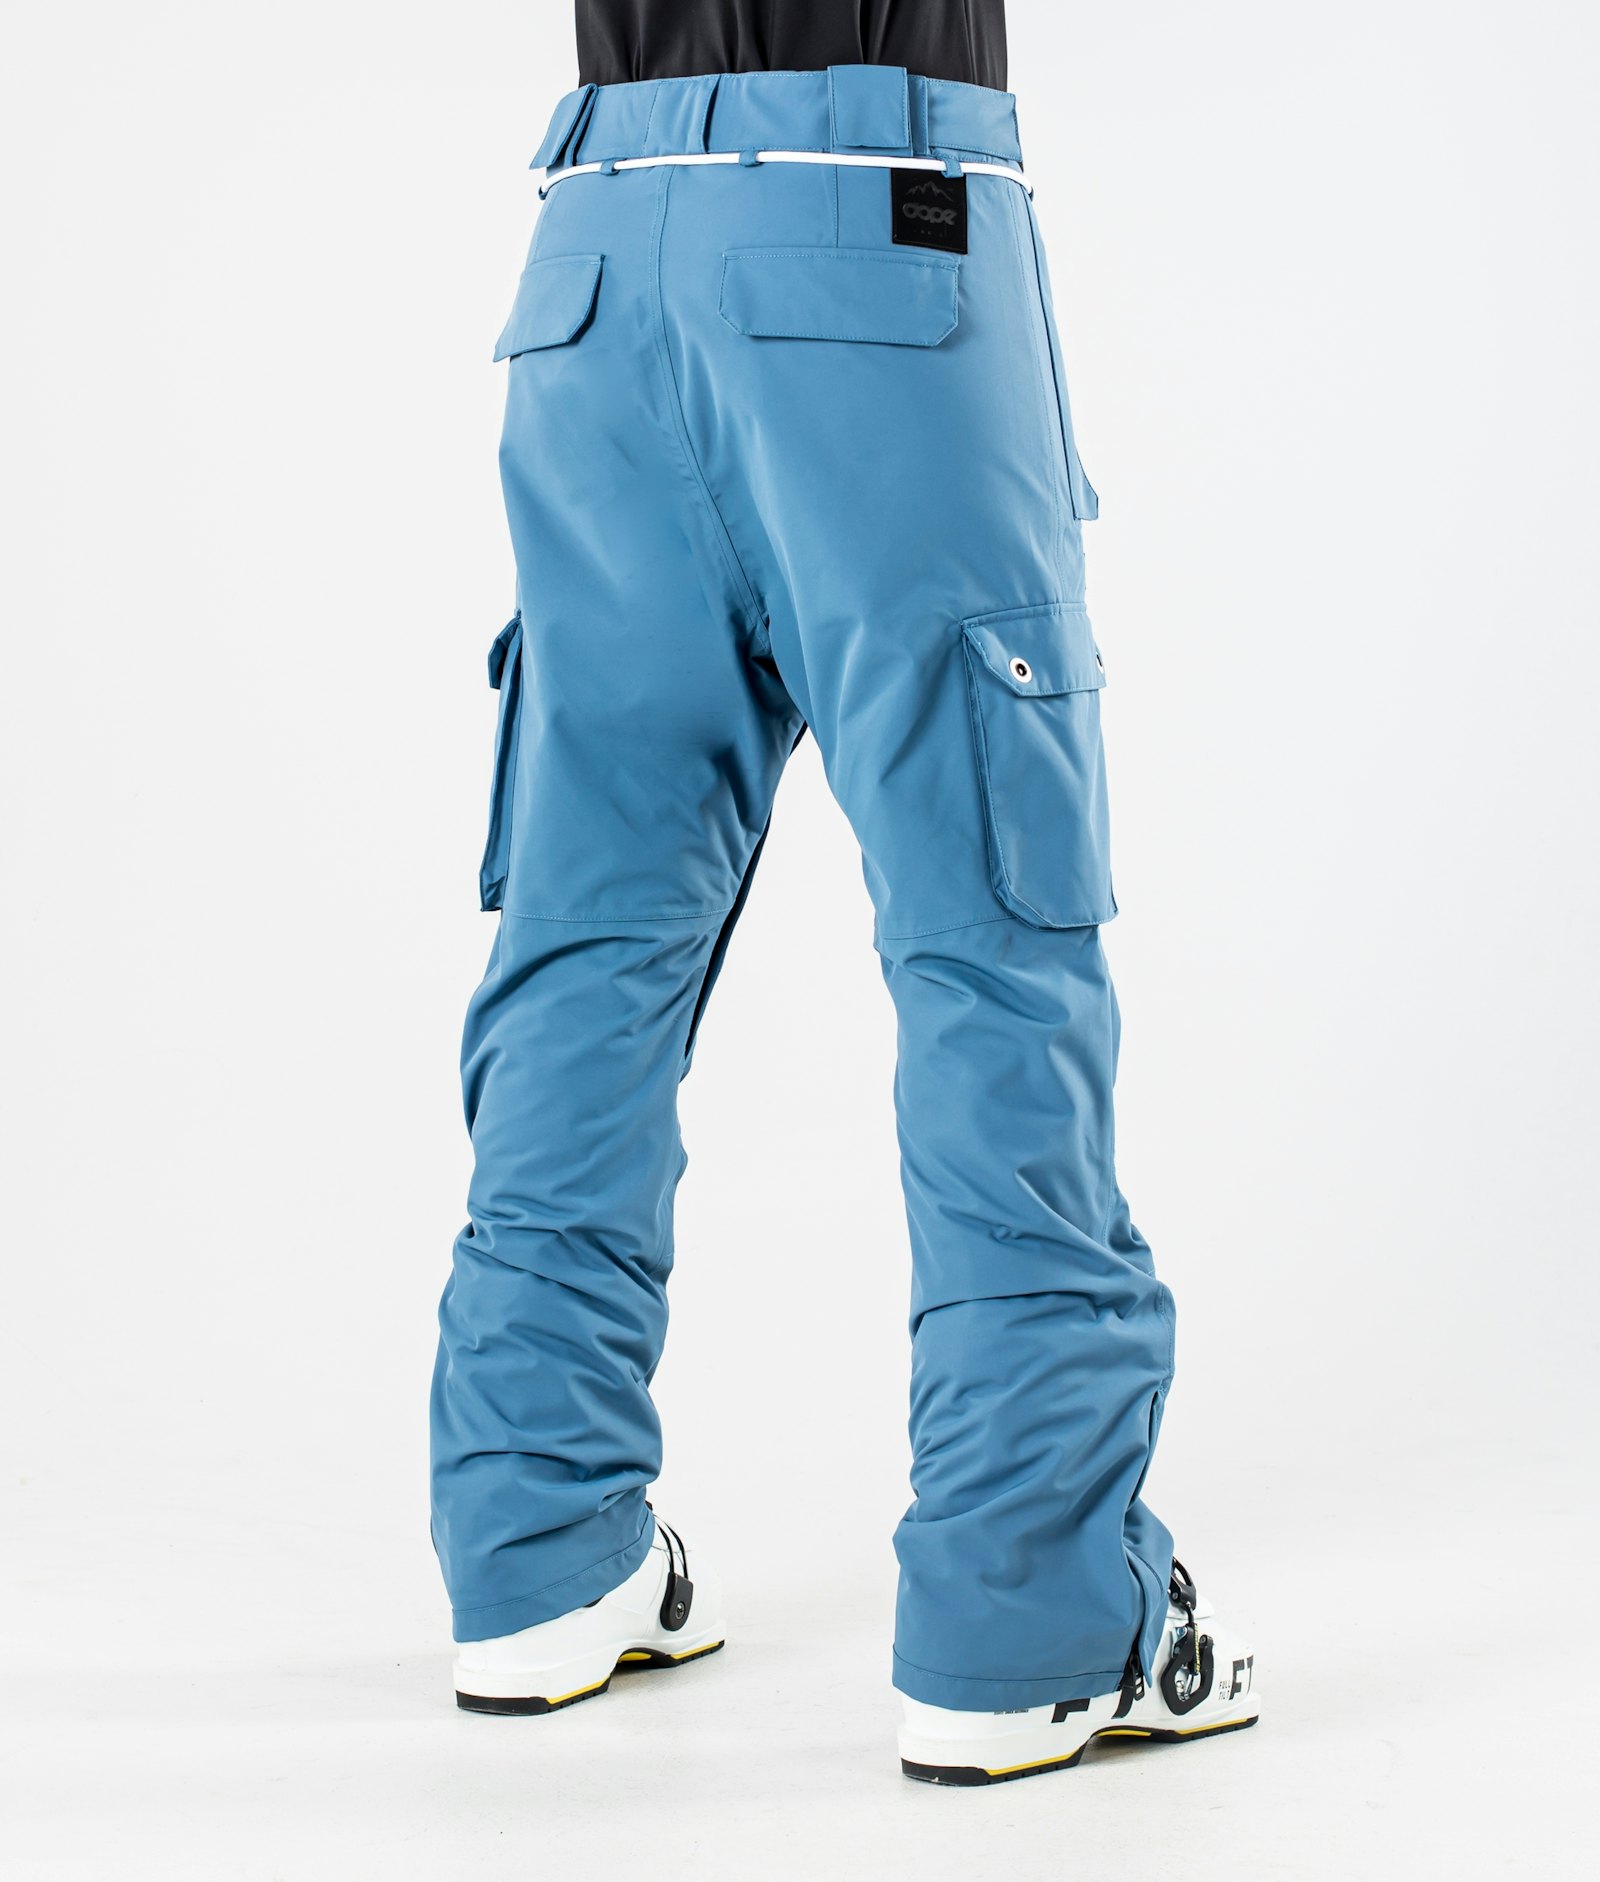 Iconic W 2020 Ski Pants Women Blue Steel